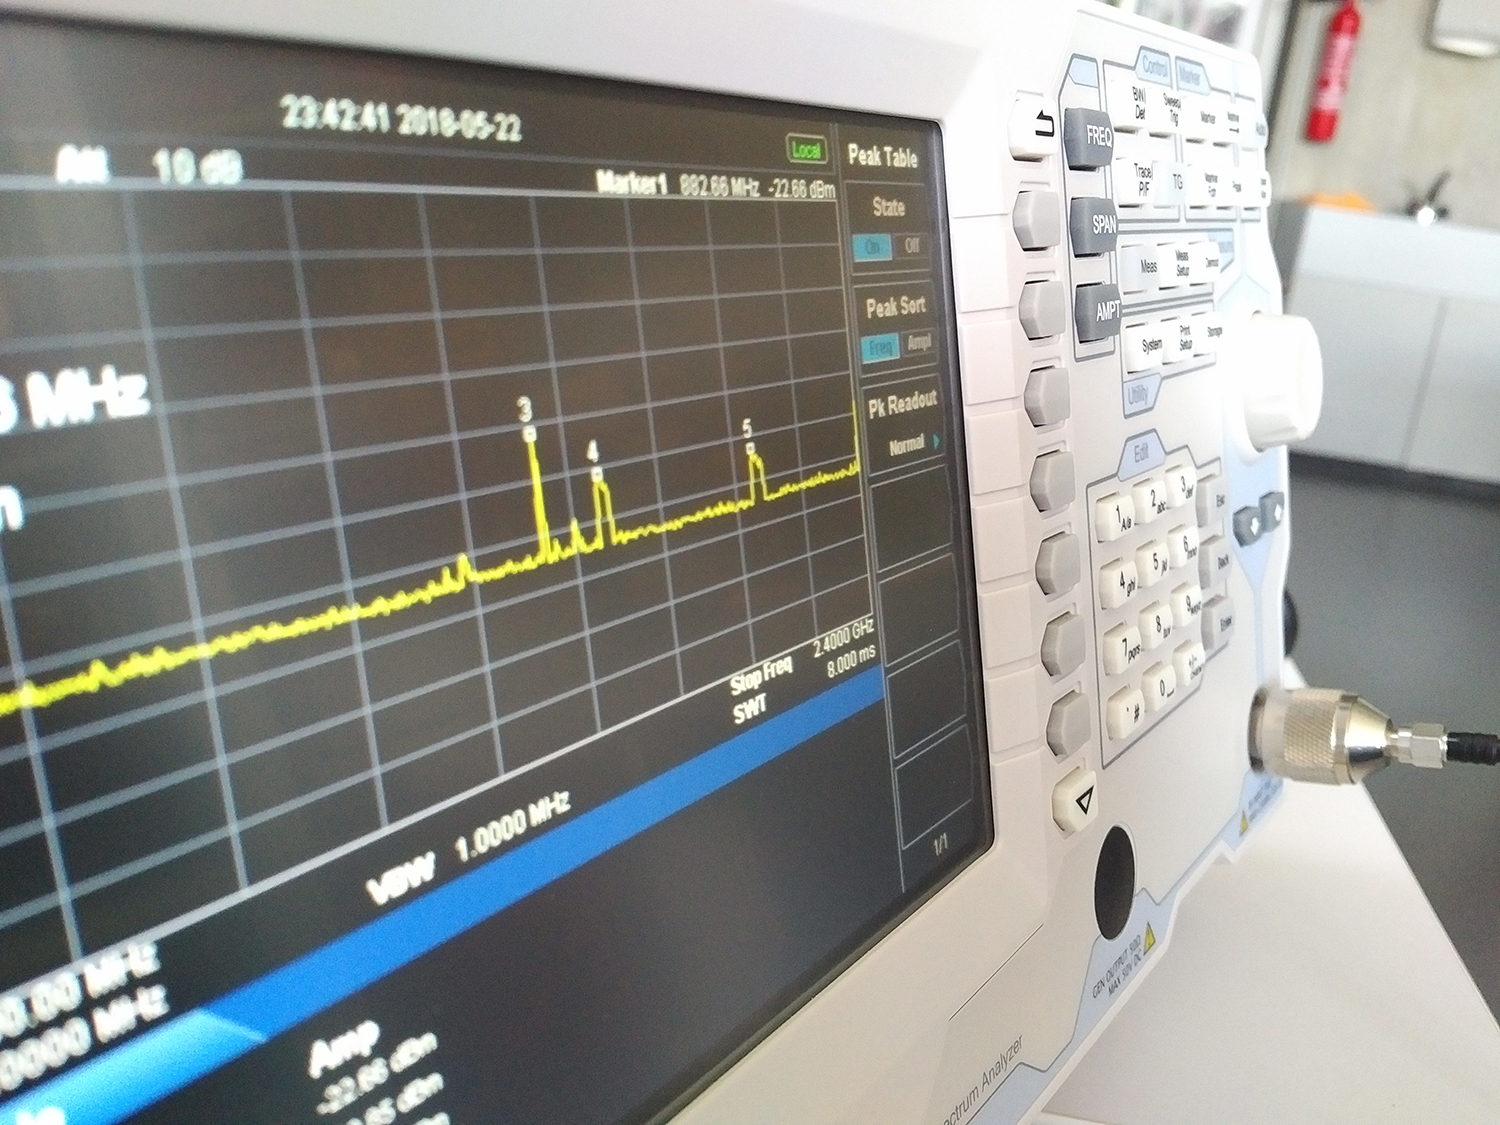 Mit der leistungsfähigen Messtechnik im Inneren des HSR Funkmesslabor-Autos lassen sich unter anderem genaue Abdeckungskarten über Funk- und Datenmessungen erstellen.